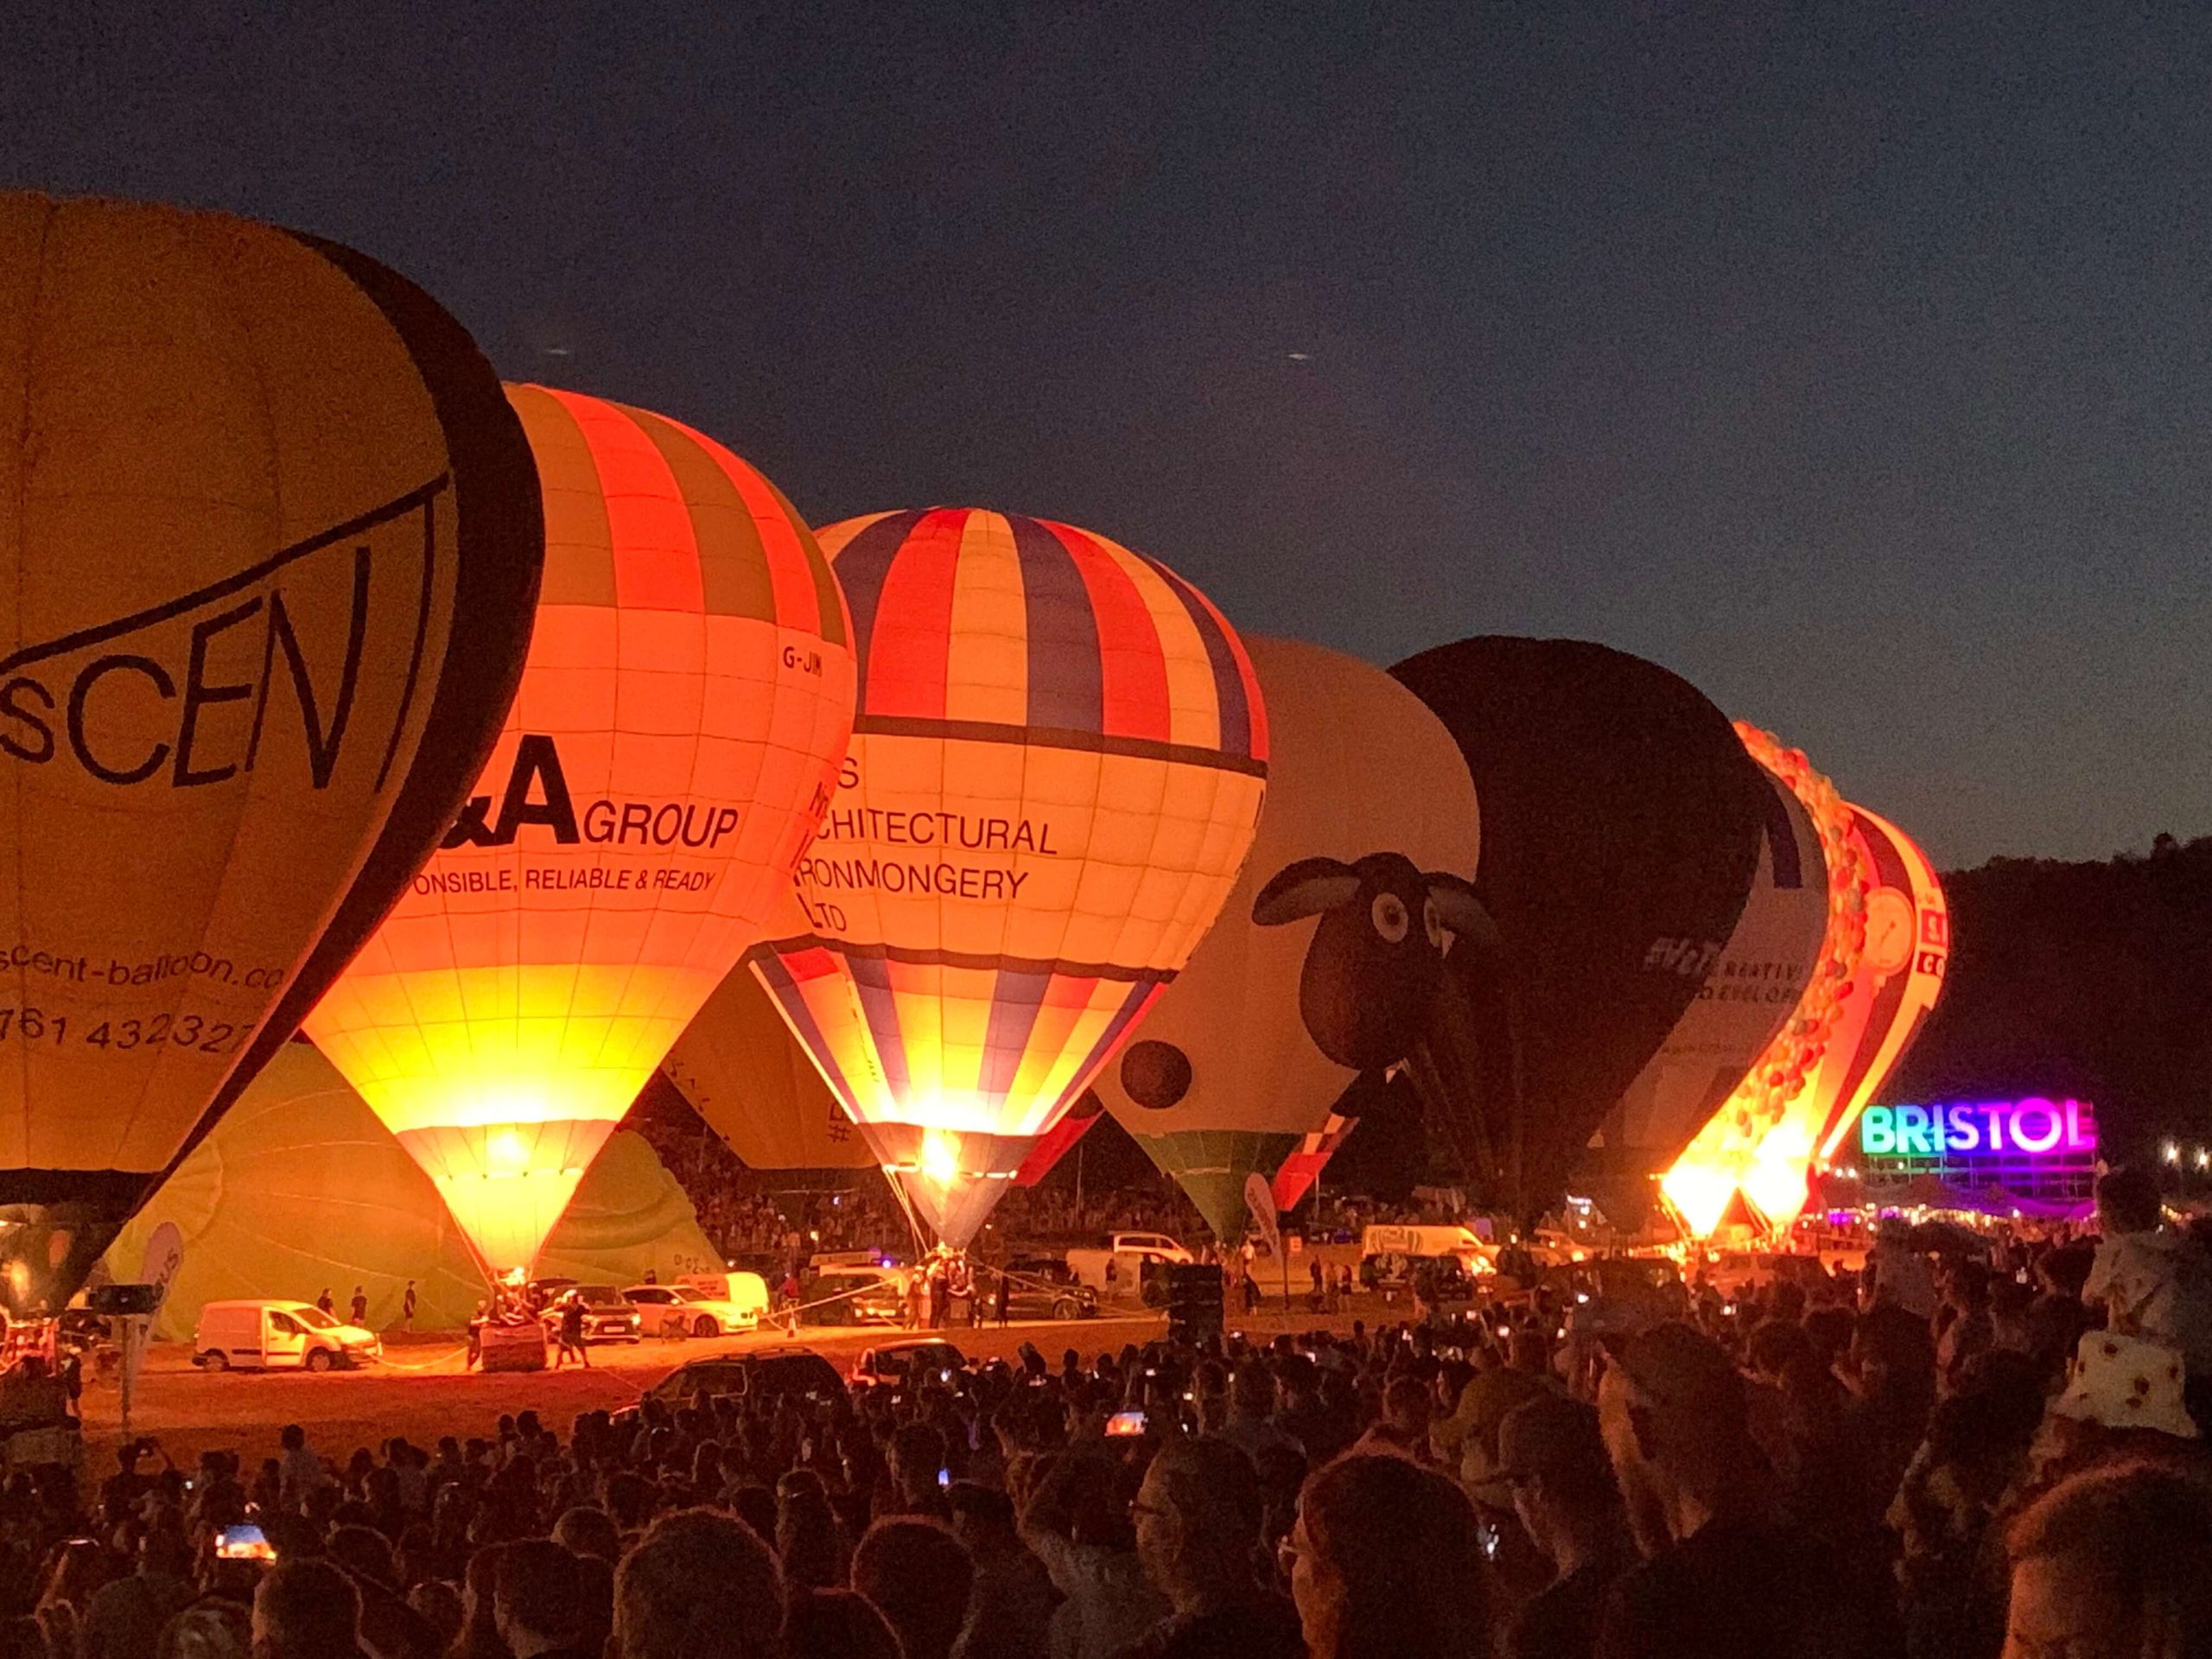 Hot Air Ballooning At Bristol Fiesta